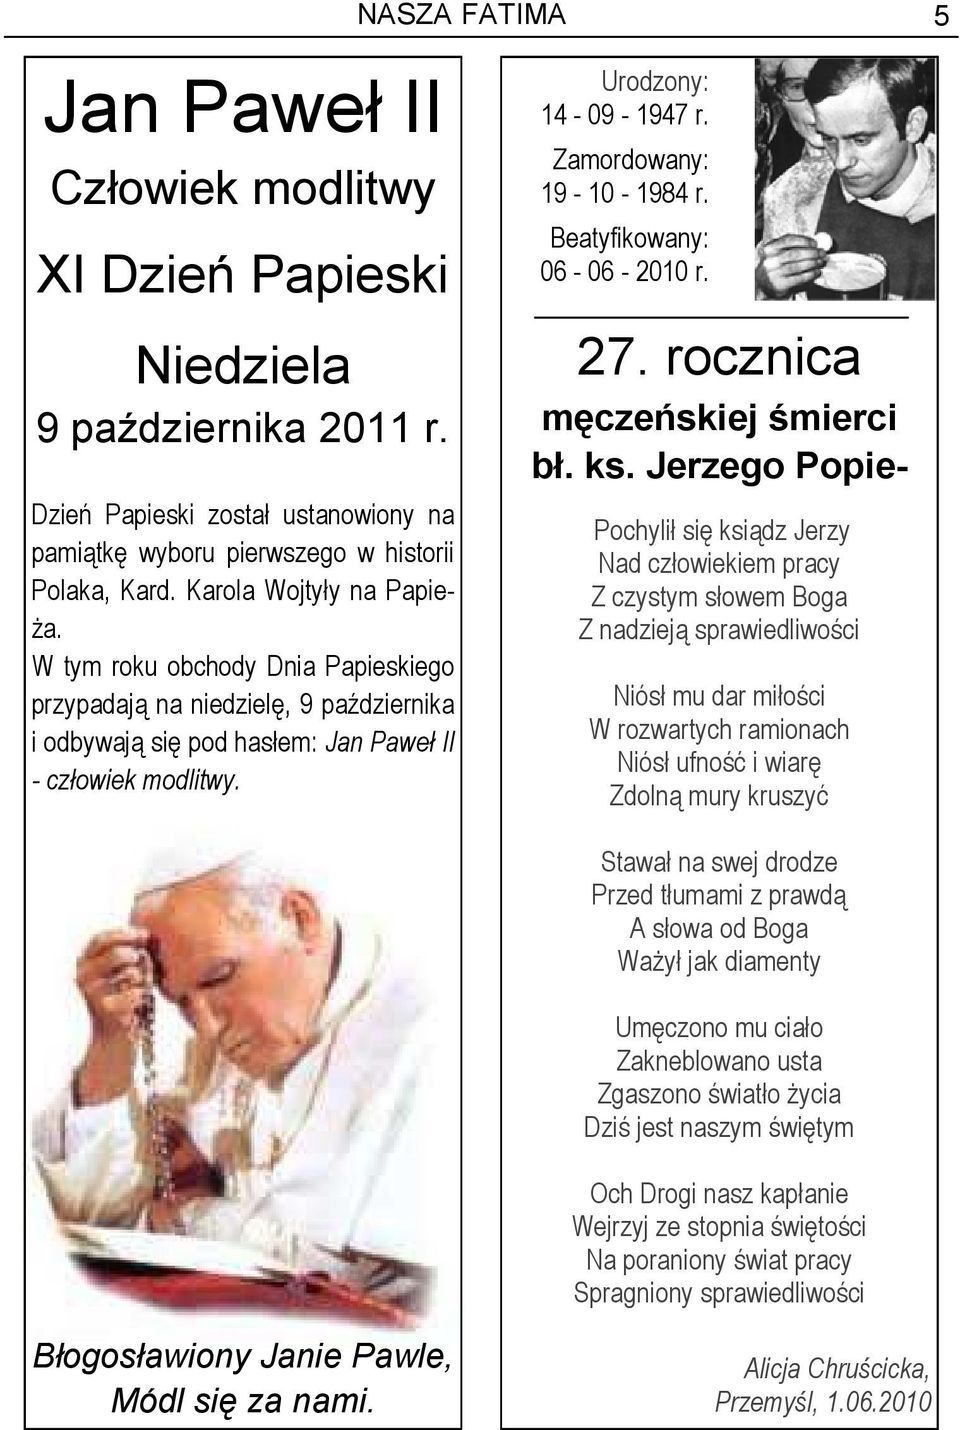 Beatyfikowany: 06-06 - 2010 r. 27. rocznica męczeńskiej śmierci bł. ks.